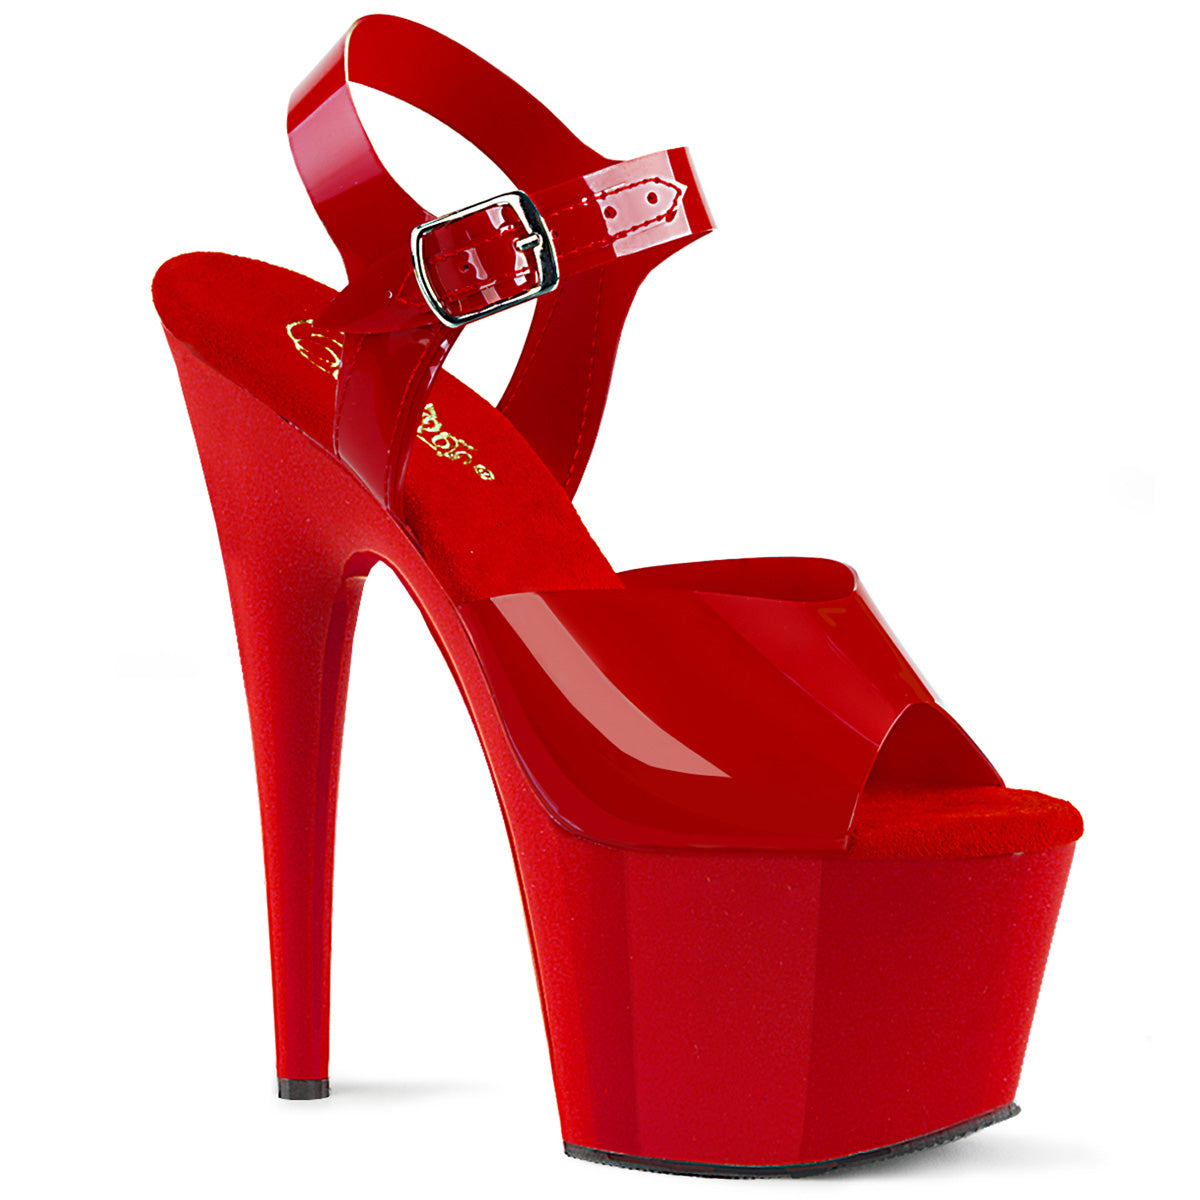 Pleaser Sandales pour femmes ADORE-708n rouge (ressemble à la gelée) TPU / rouge